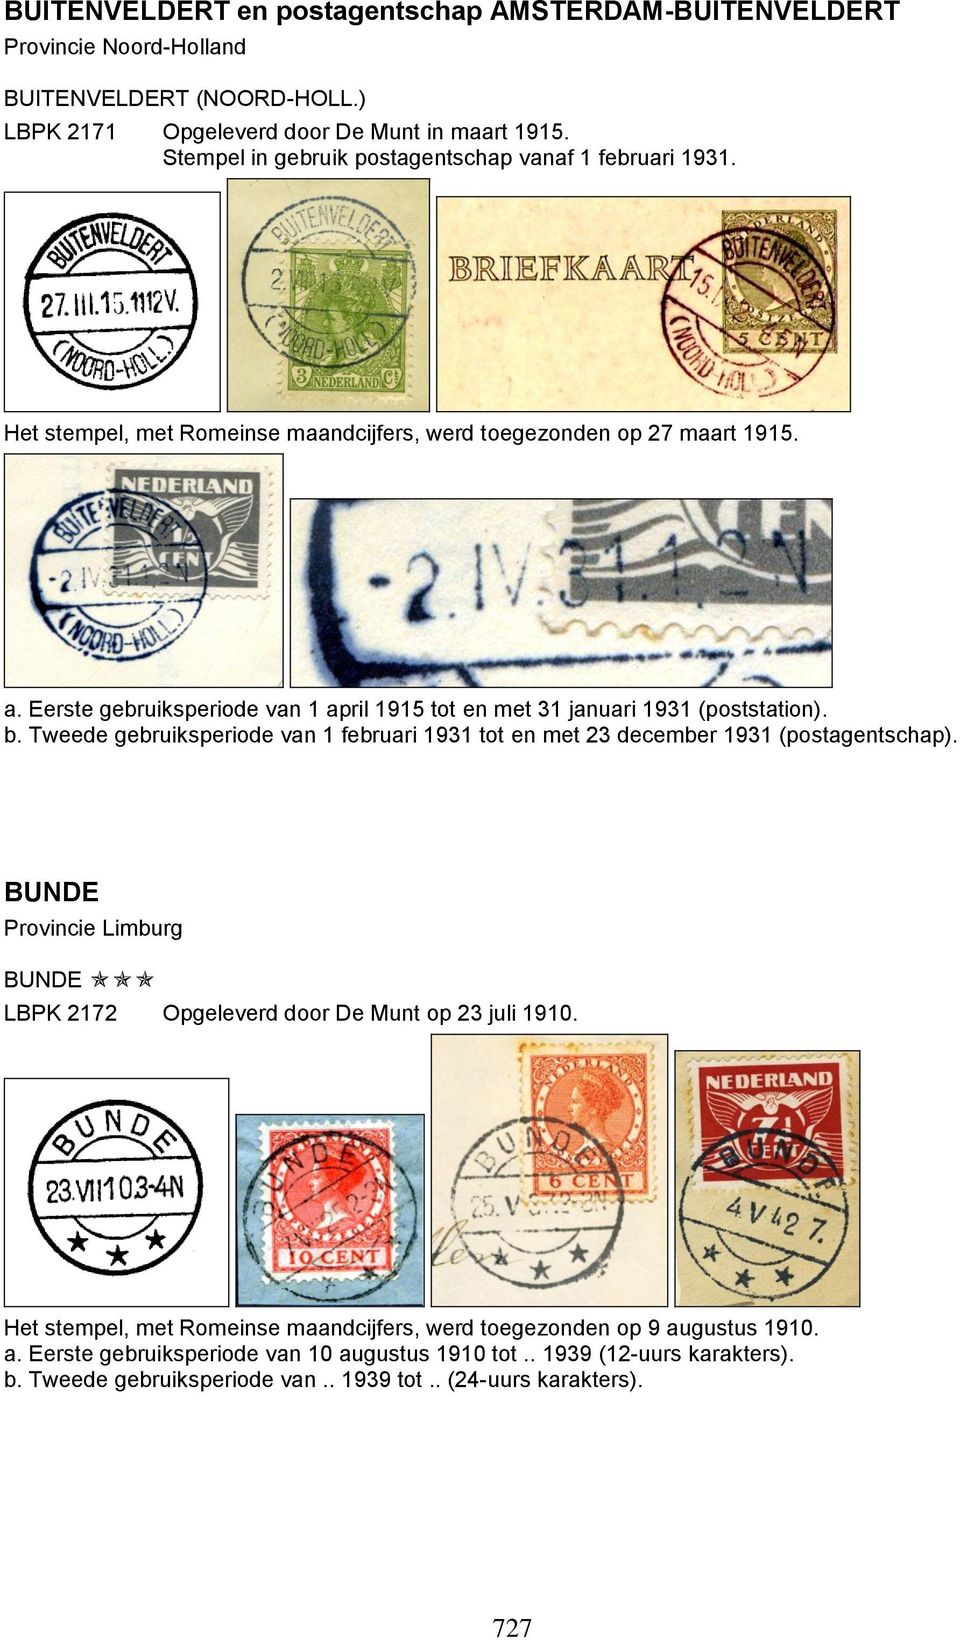 Eerste gebruiksperiode van 1 april 1915 tot en met 31 januari 1931 (poststation). b. Tweede gebruiksperiode van 1 februari 1931 tot en met 23 december 1931 (postagentschap).